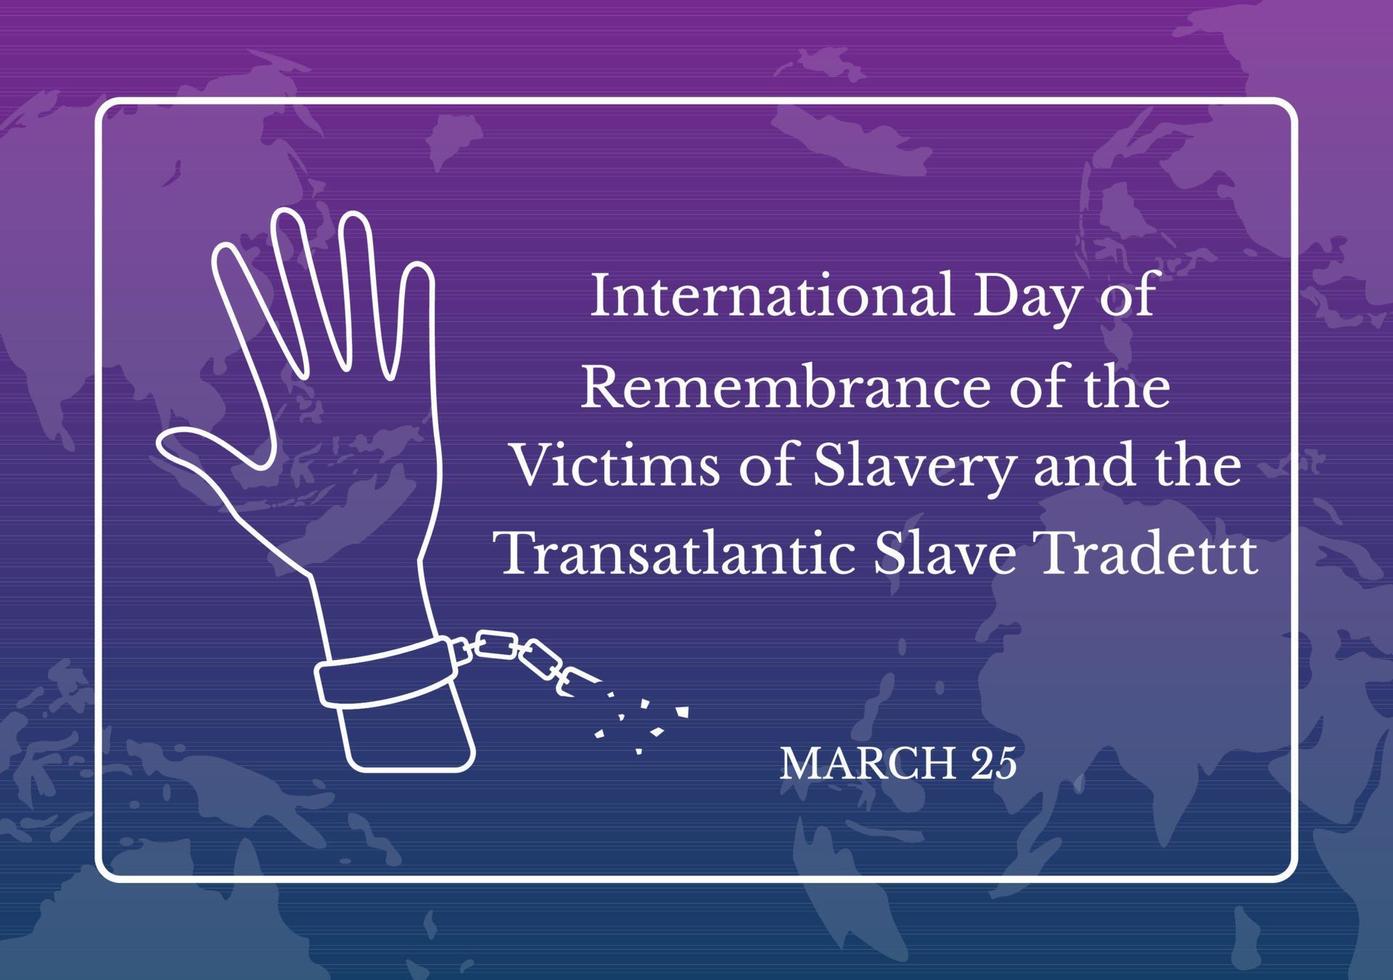 dia internacional da lembrança das vítimas da escravidão e do comércio transatlântico de escravos mão desenhada ilustração com algemas quebradas na mão design vetor